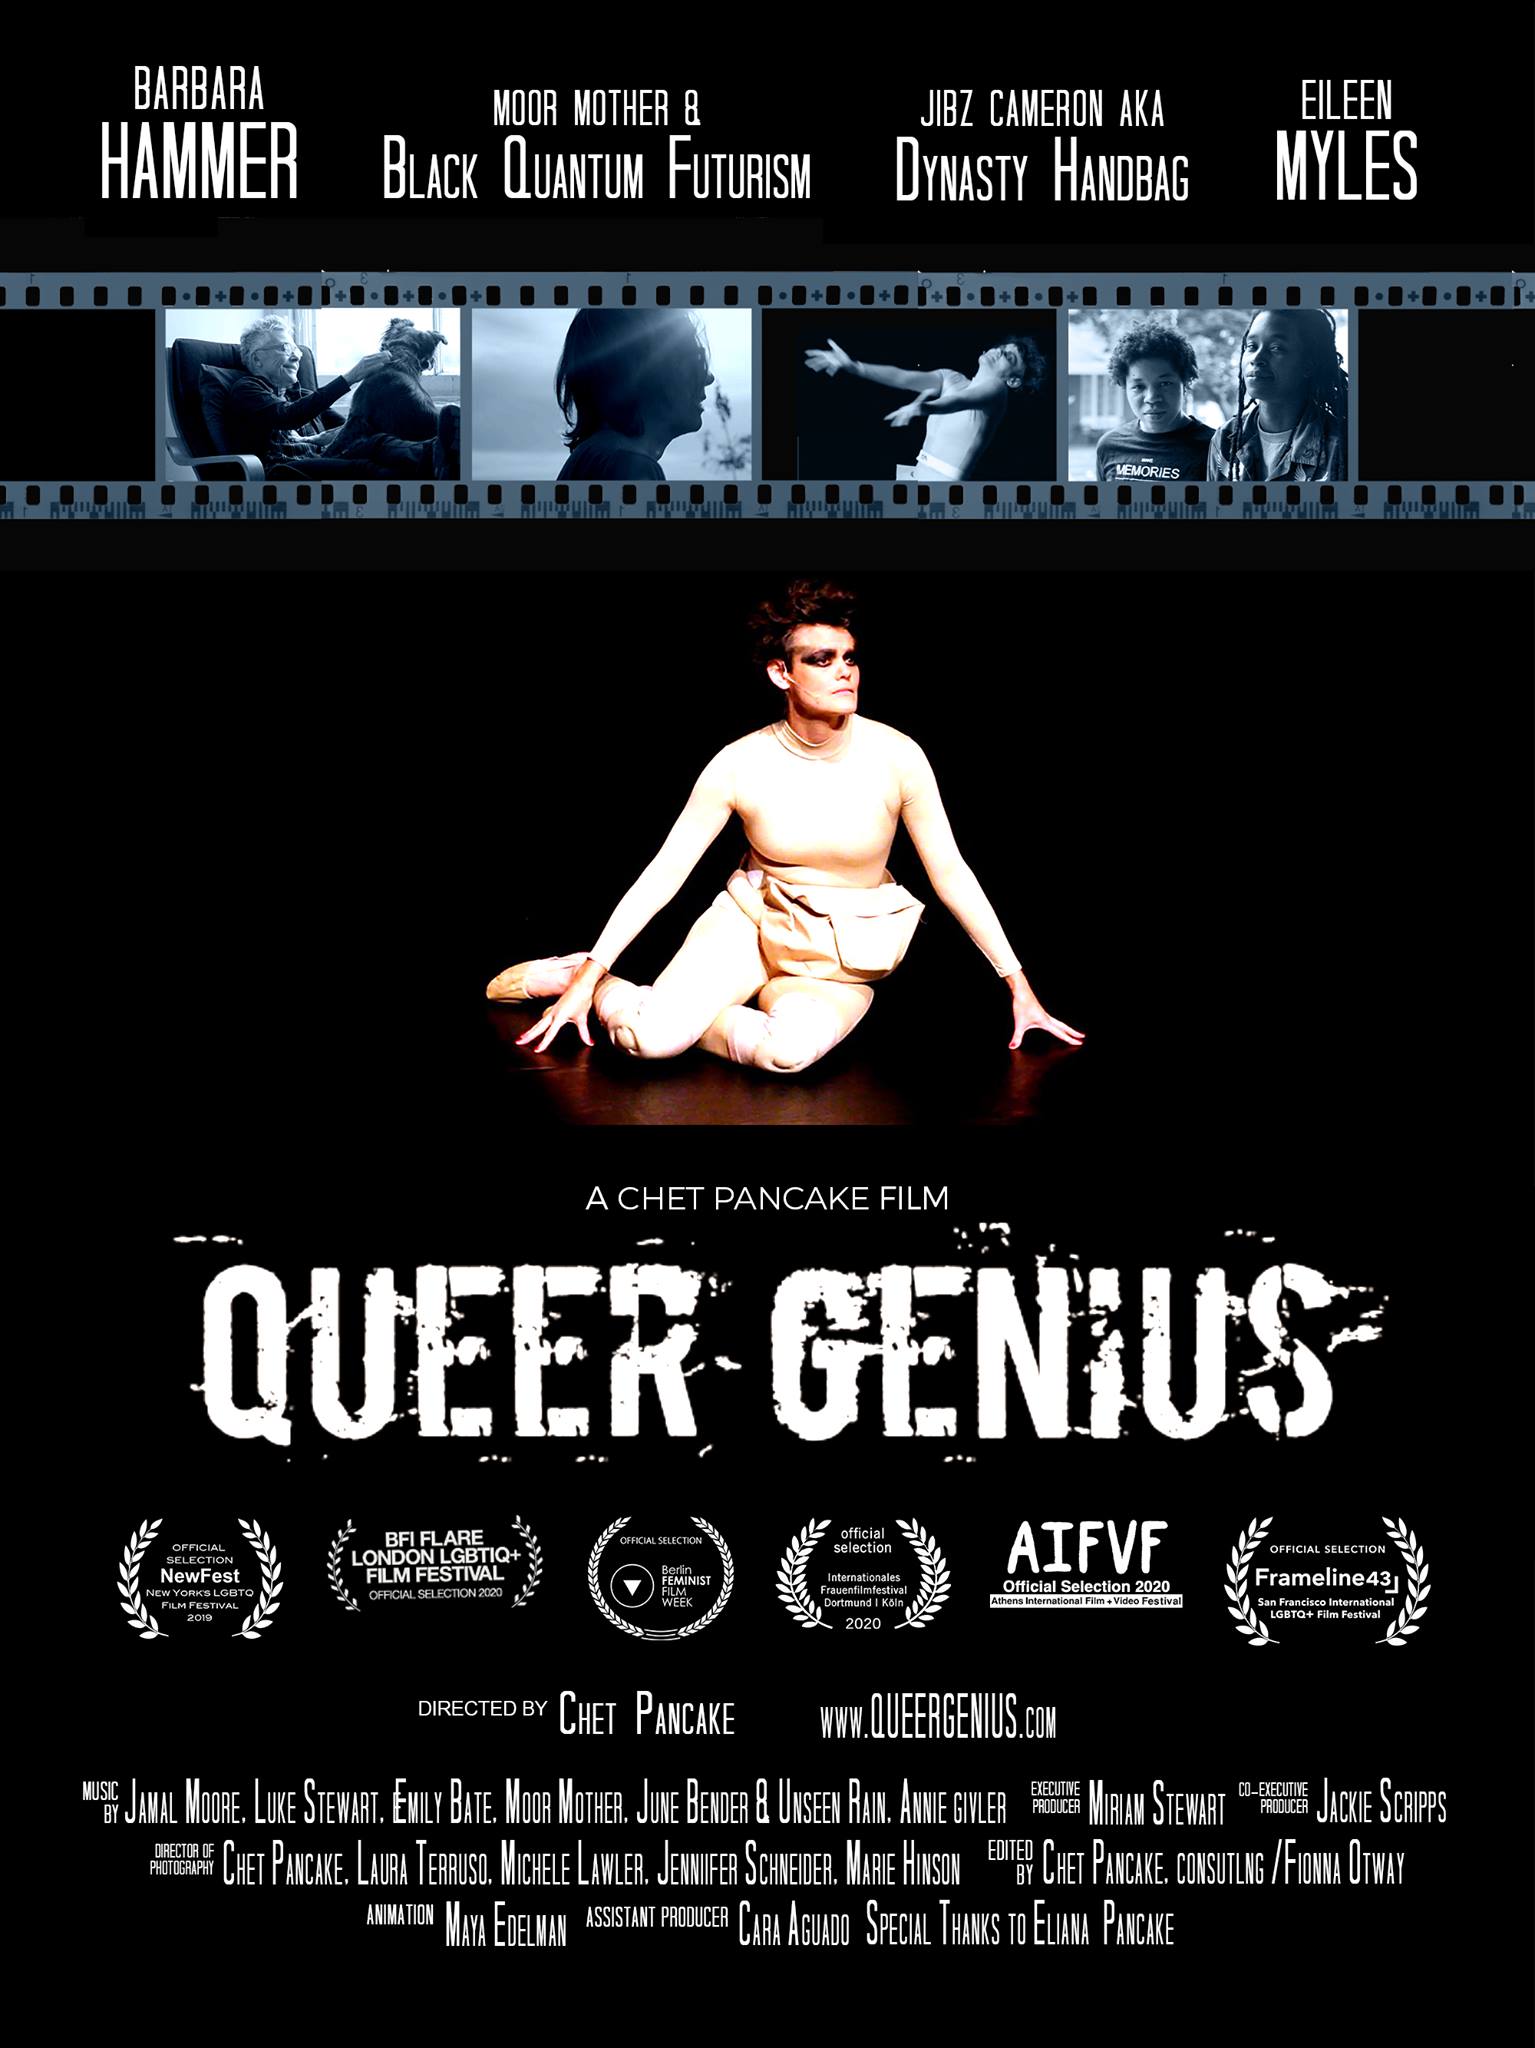 QueerEvents.ca-Film-QueerGenius